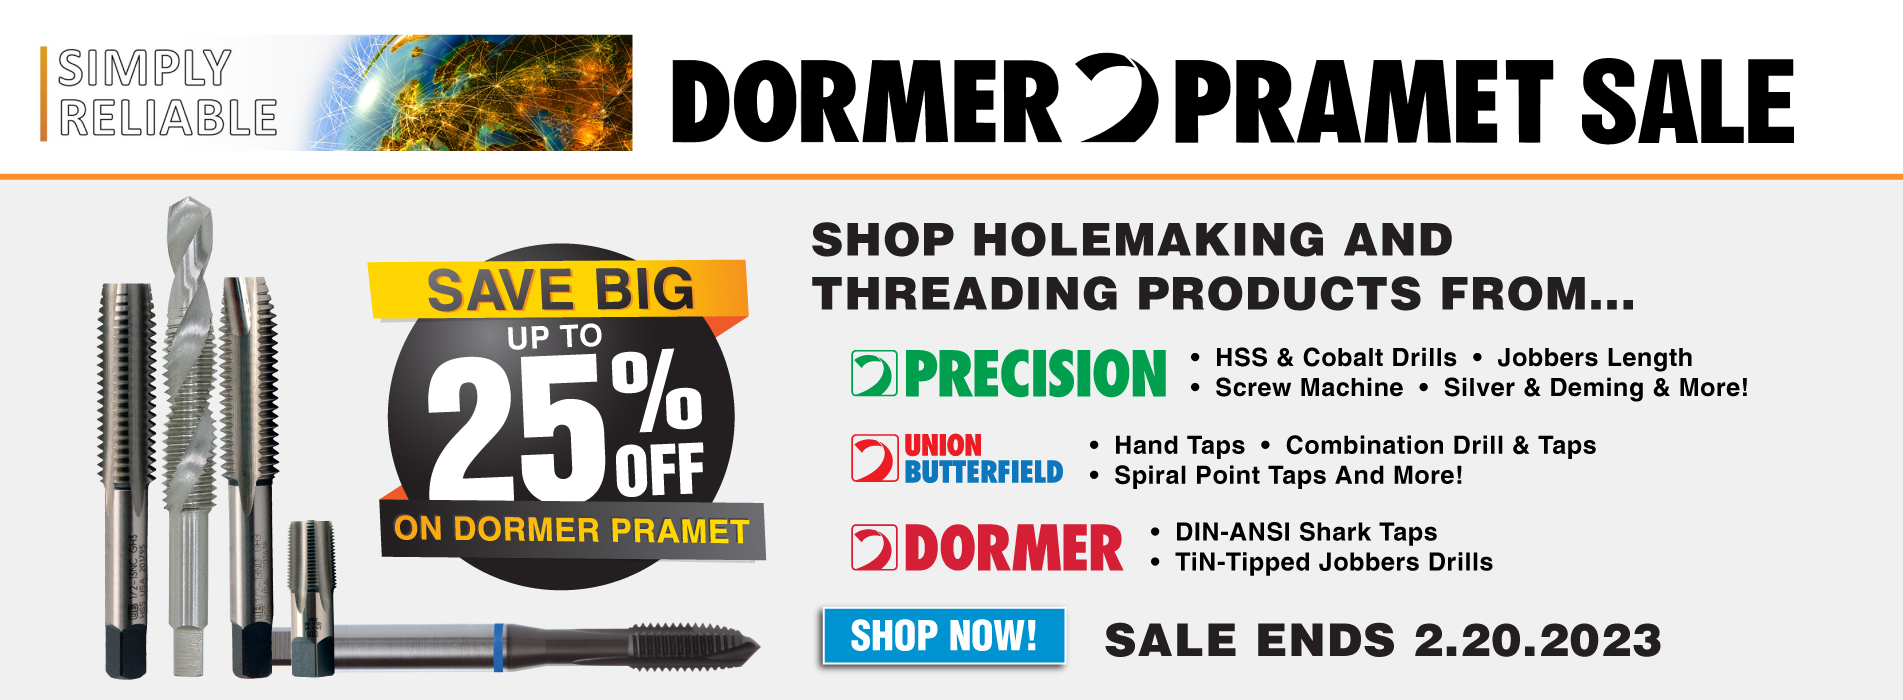 Save up to 25% off Dormer Pramet Tools!